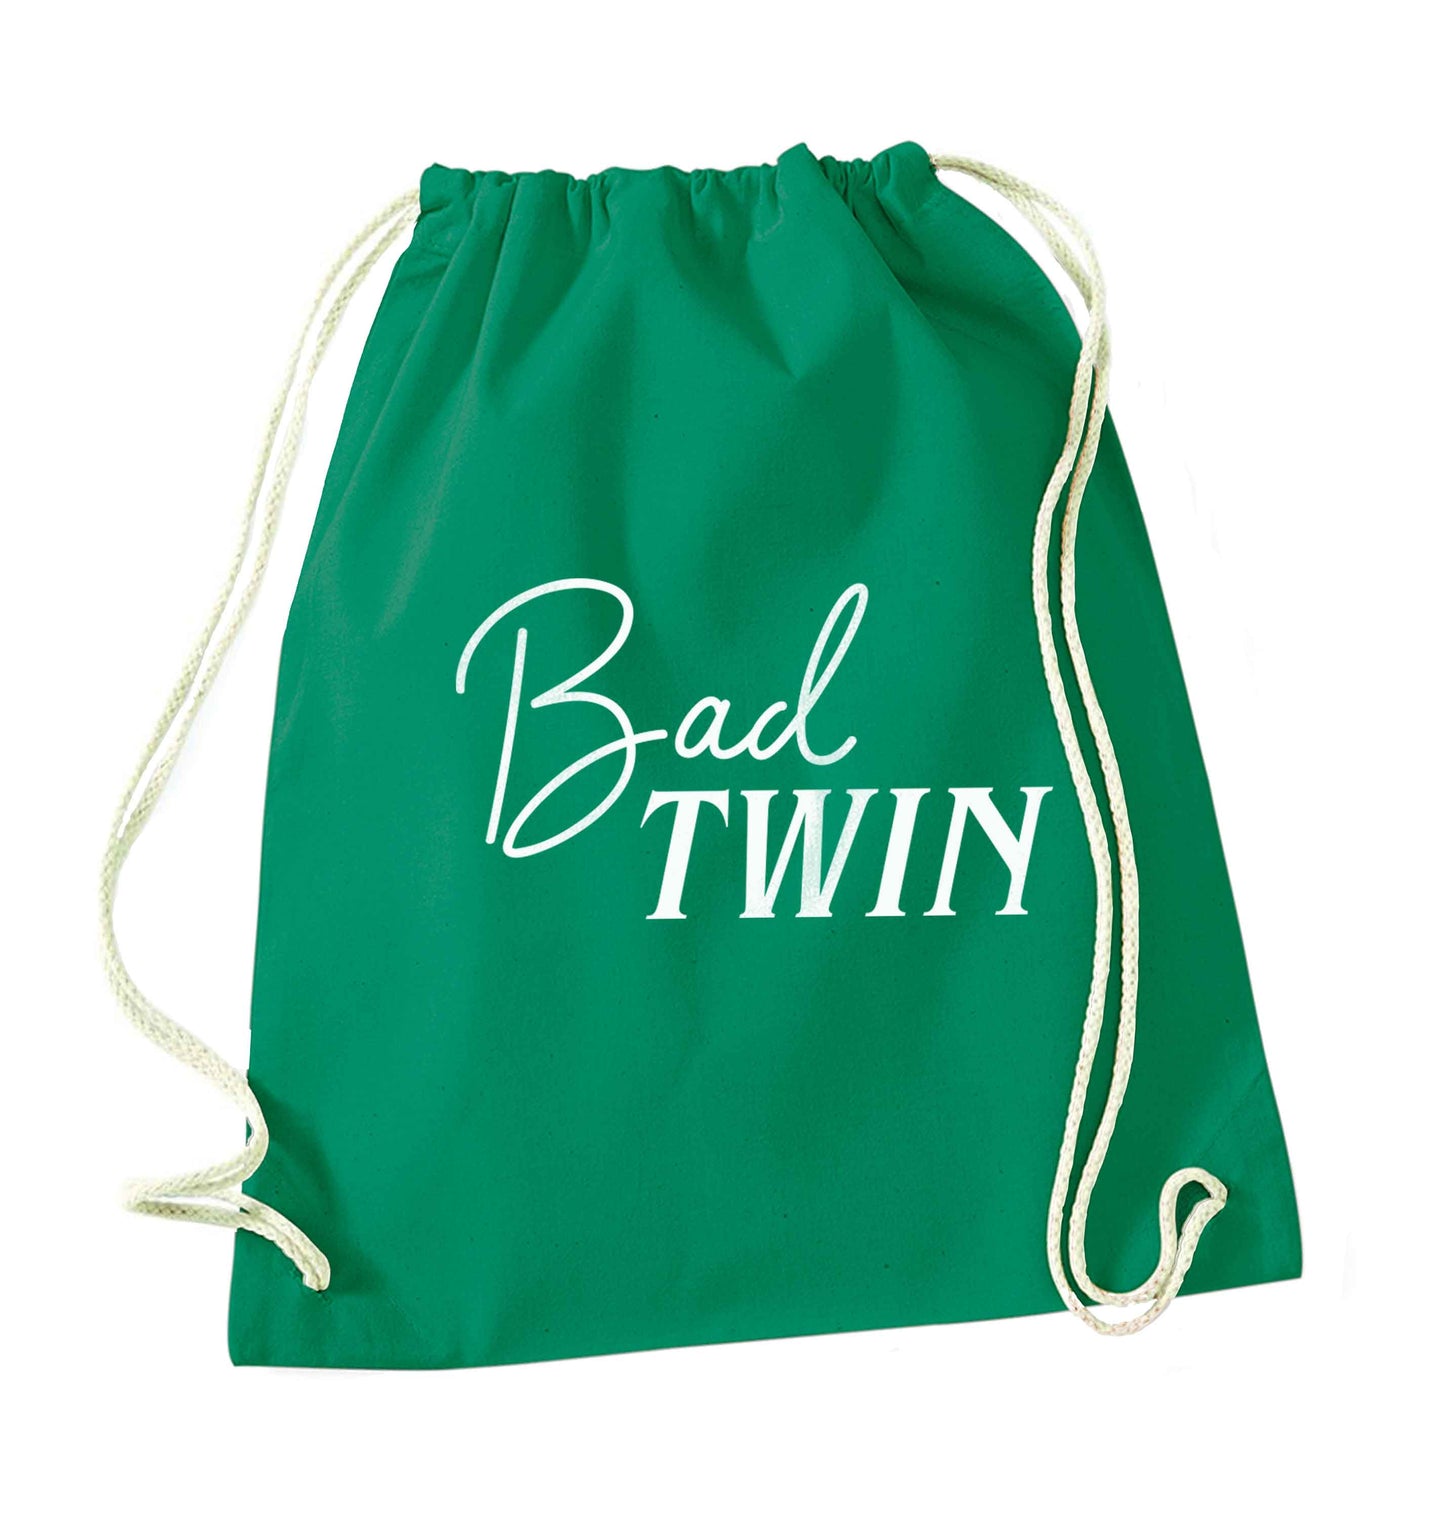 Bad twin green drawstring bag